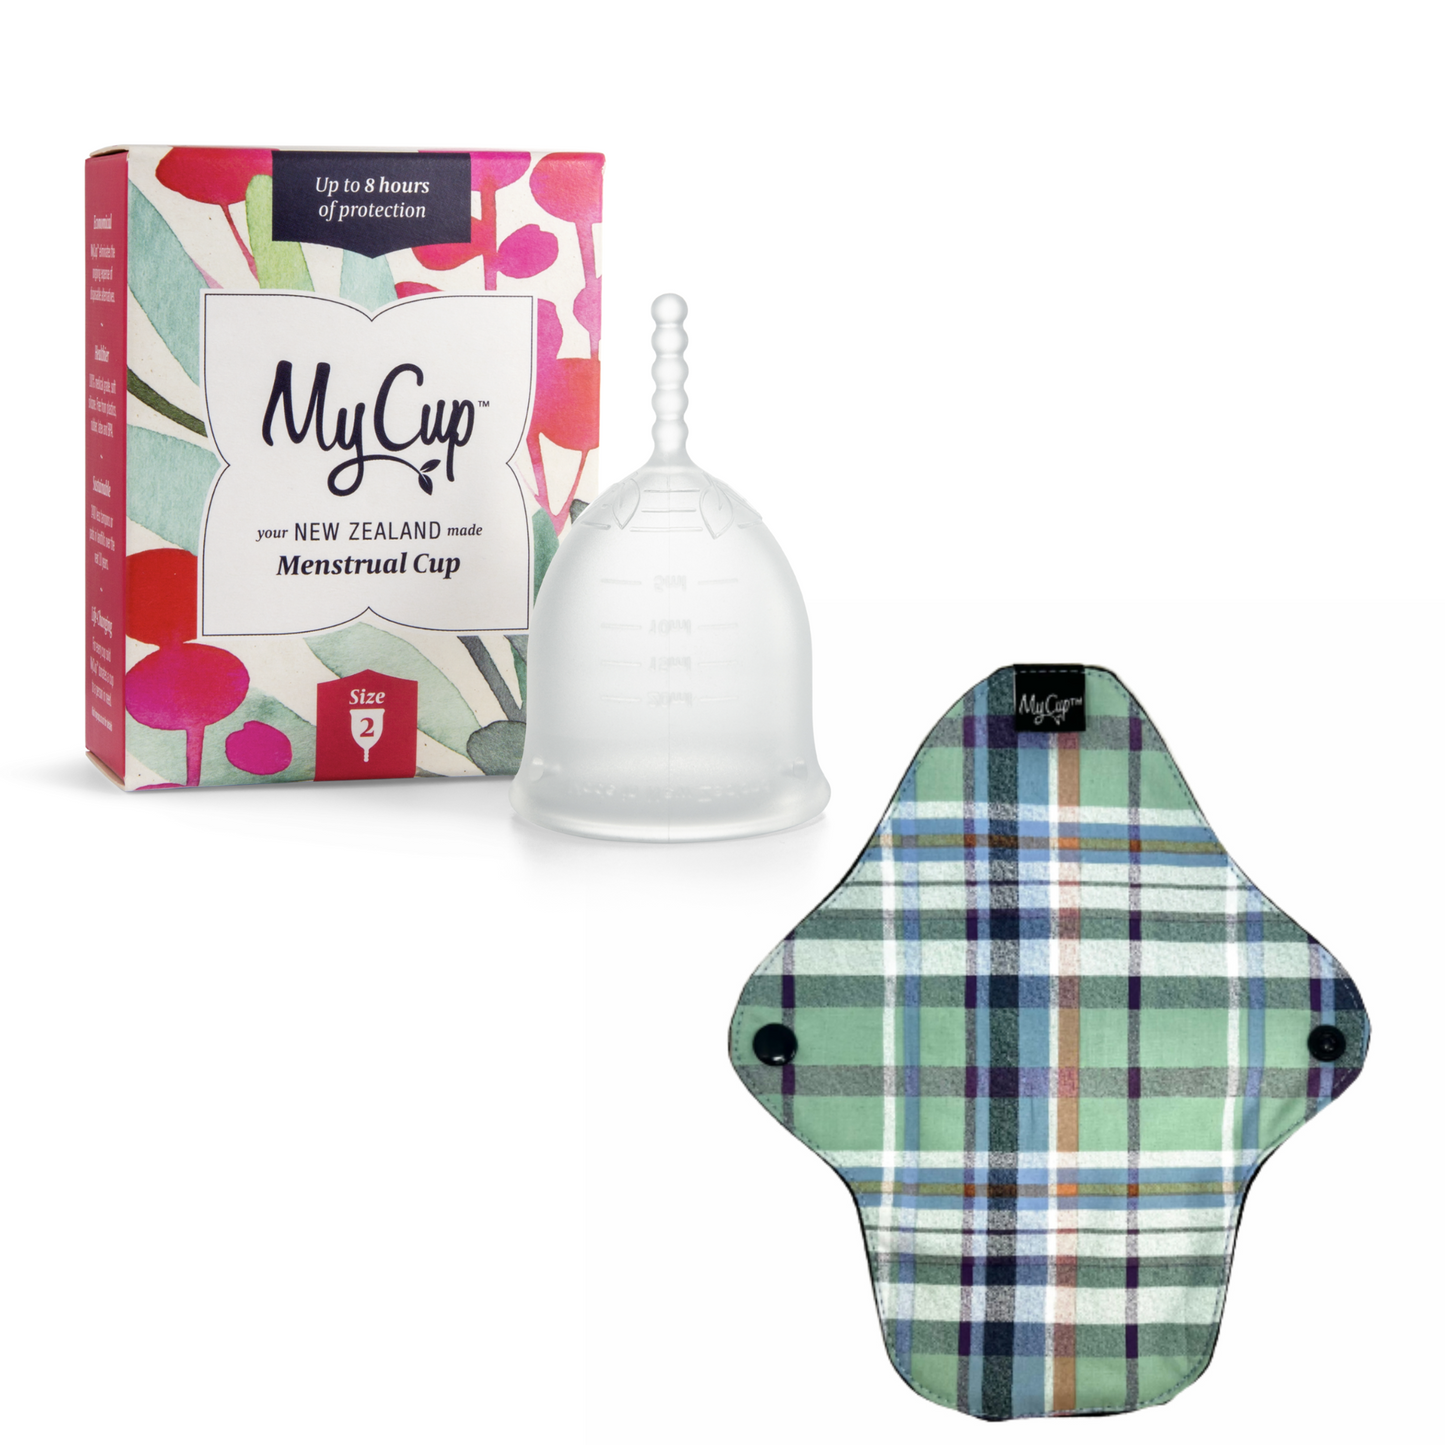 MyCup™ Menstrual Cup Size 2 + Reusable Super Pad Bundle